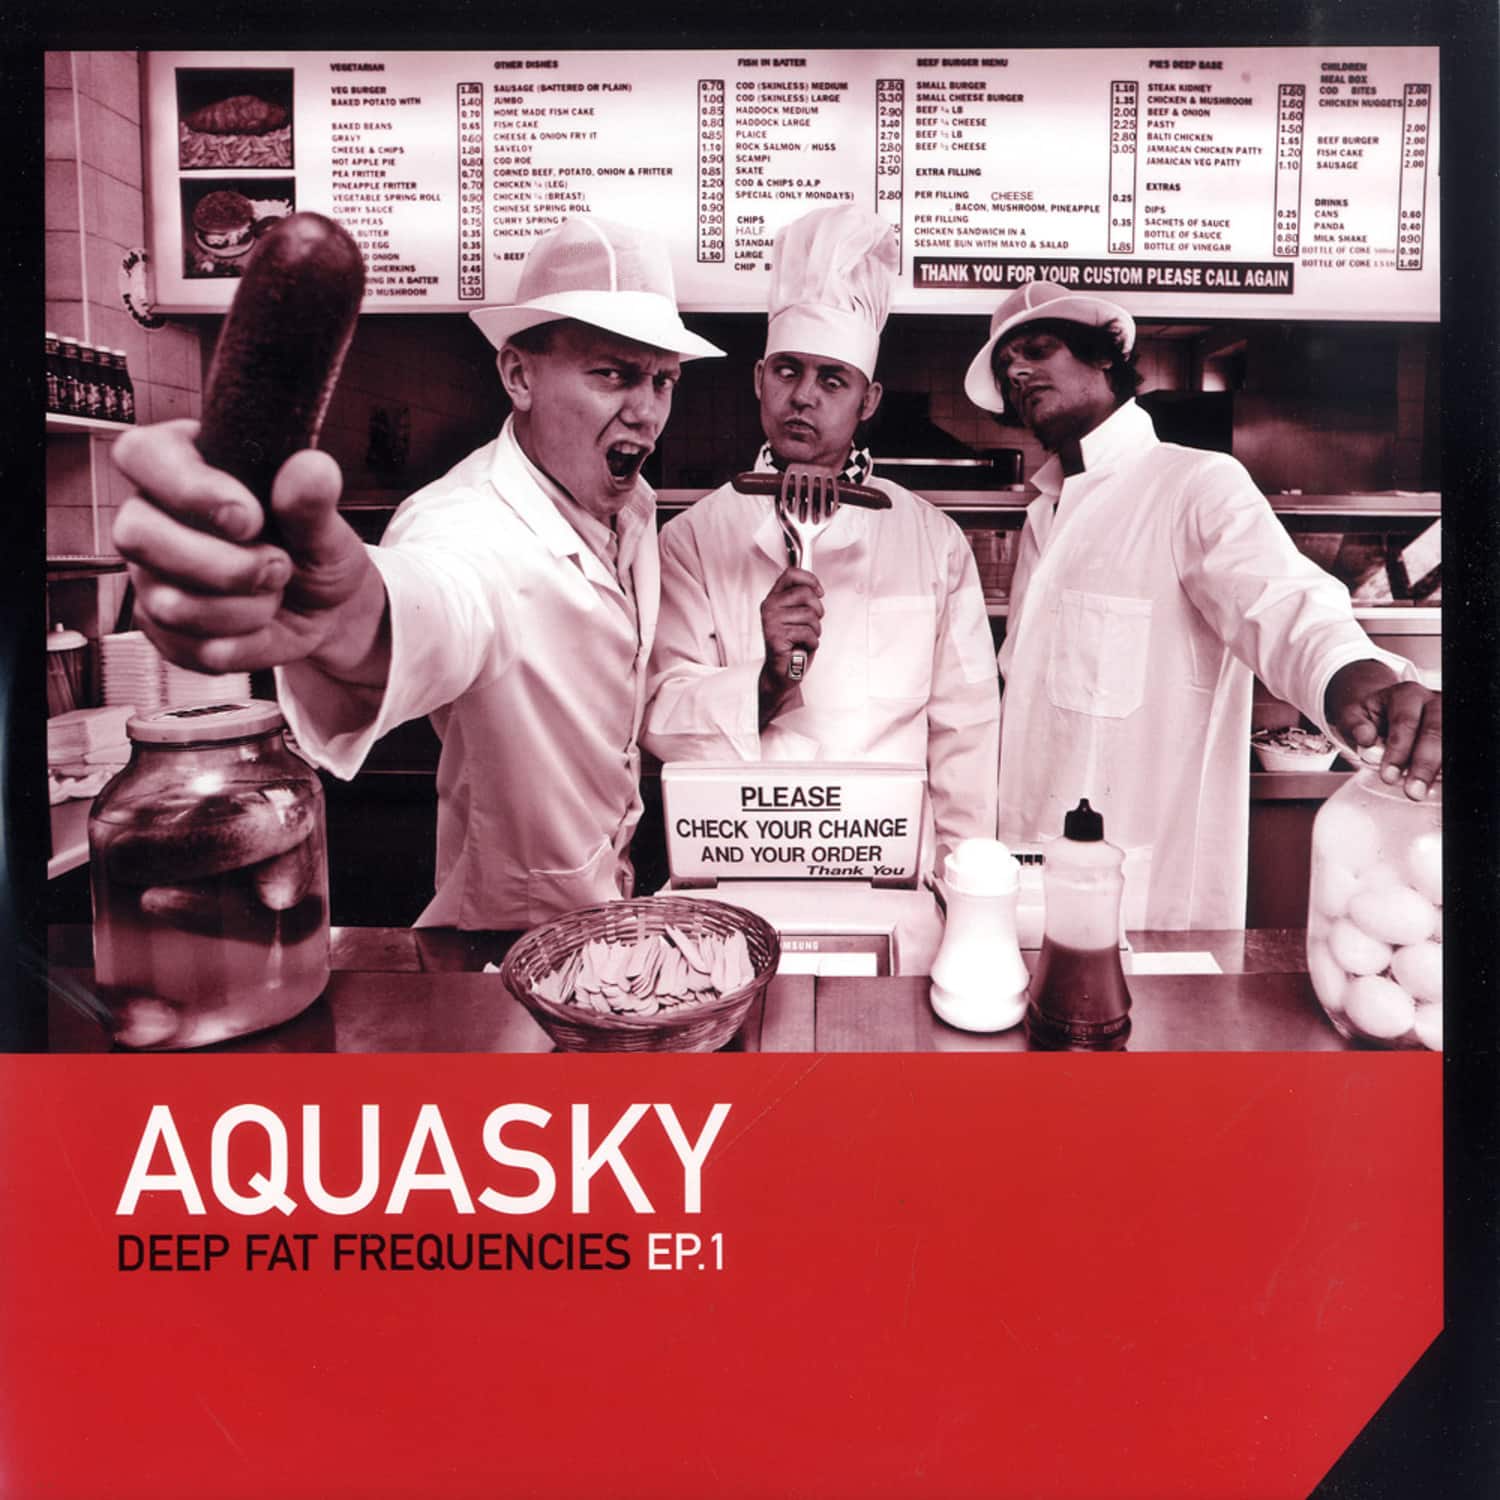 Aquasky - DEEP FAT FREQUENCIES EP.1